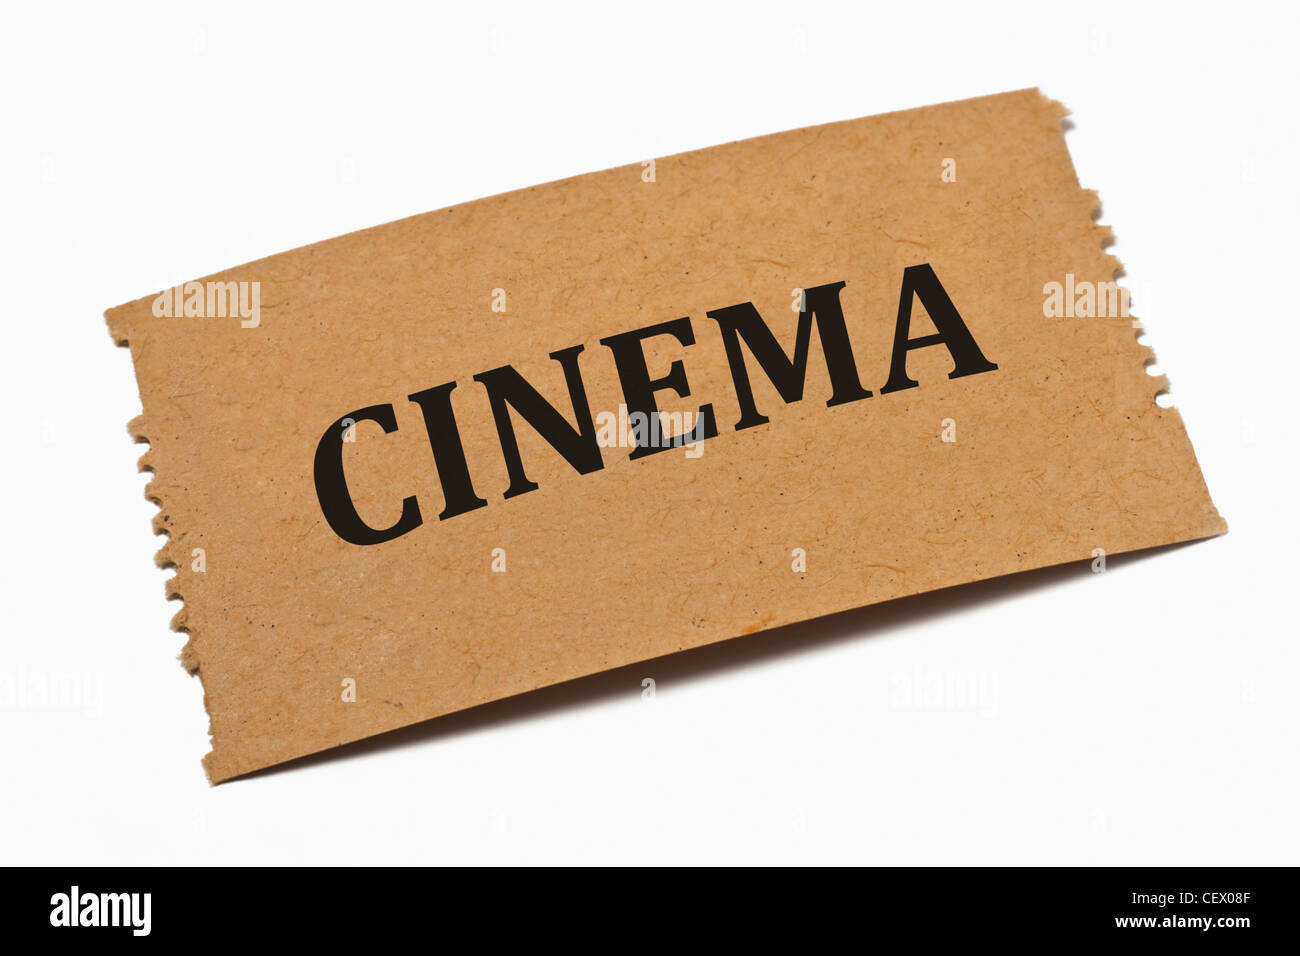 Detailansicht einer Karte aus Papier mit der Aufschrift Cinema (Kino) | Dettaglio foto di una scheda di carta con la scritta Cinema Foto Stock